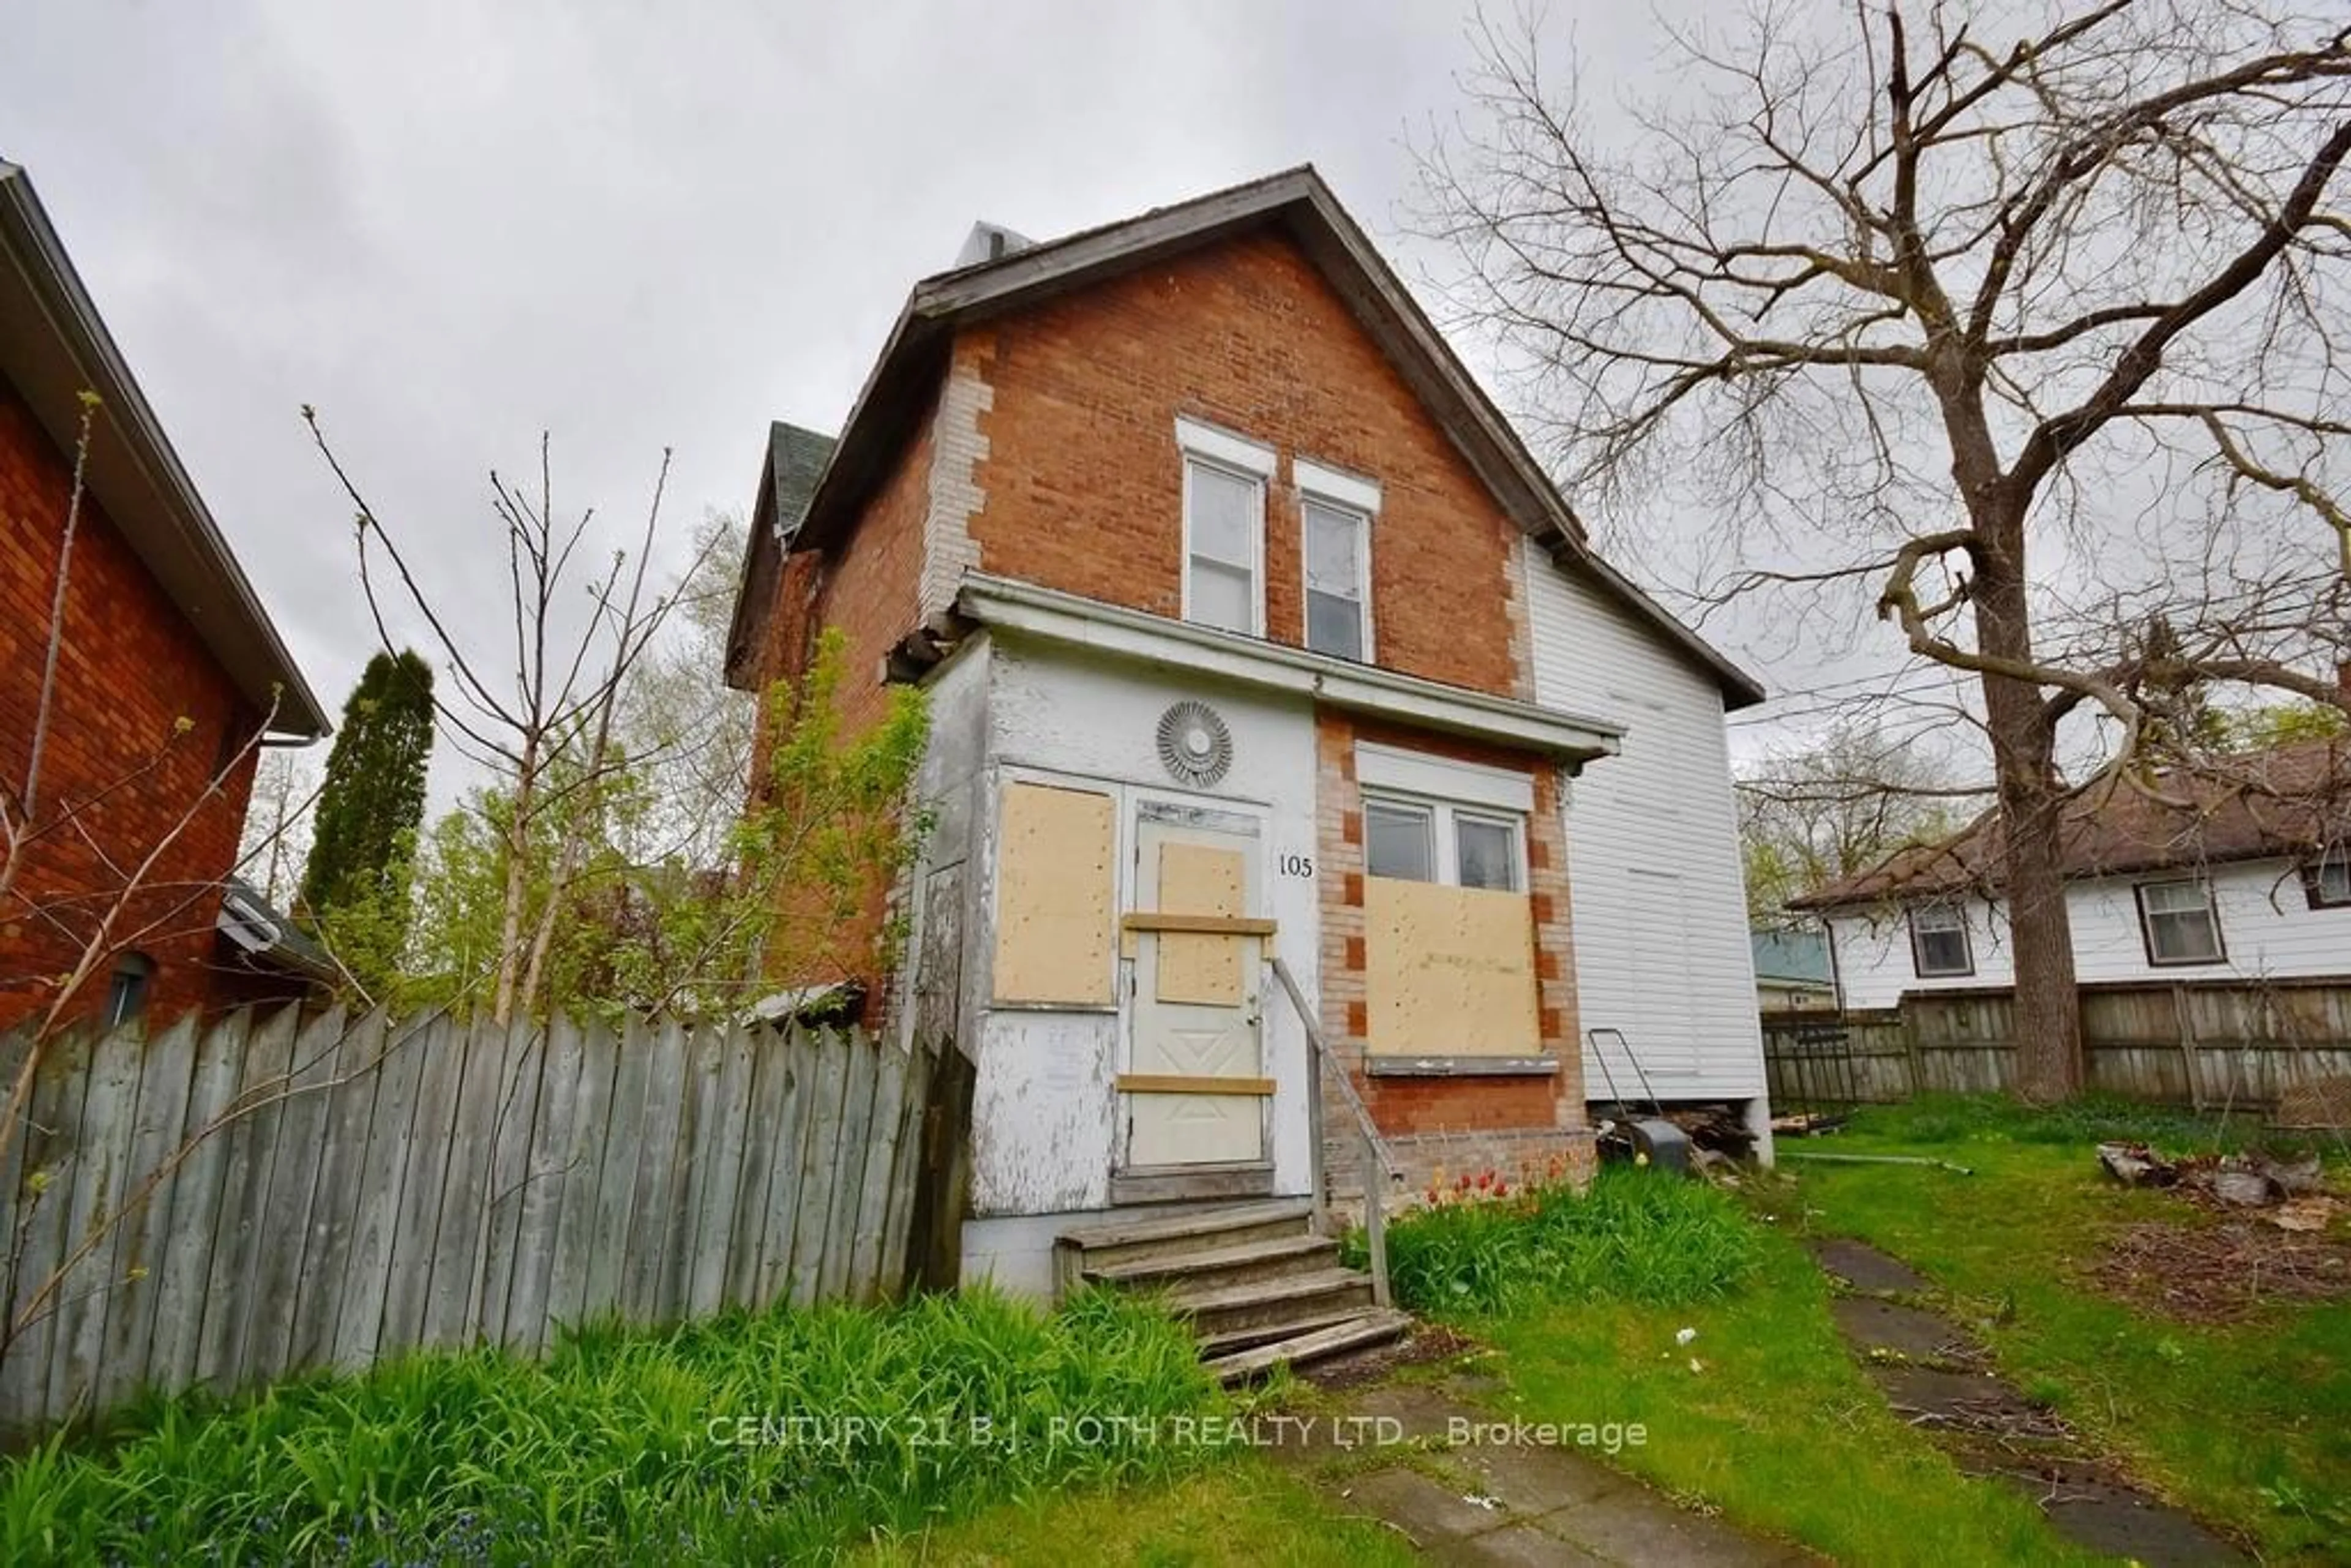 Frontside or backside of a home for 105 Matchedash St, Orillia Ontario L3V 4W9